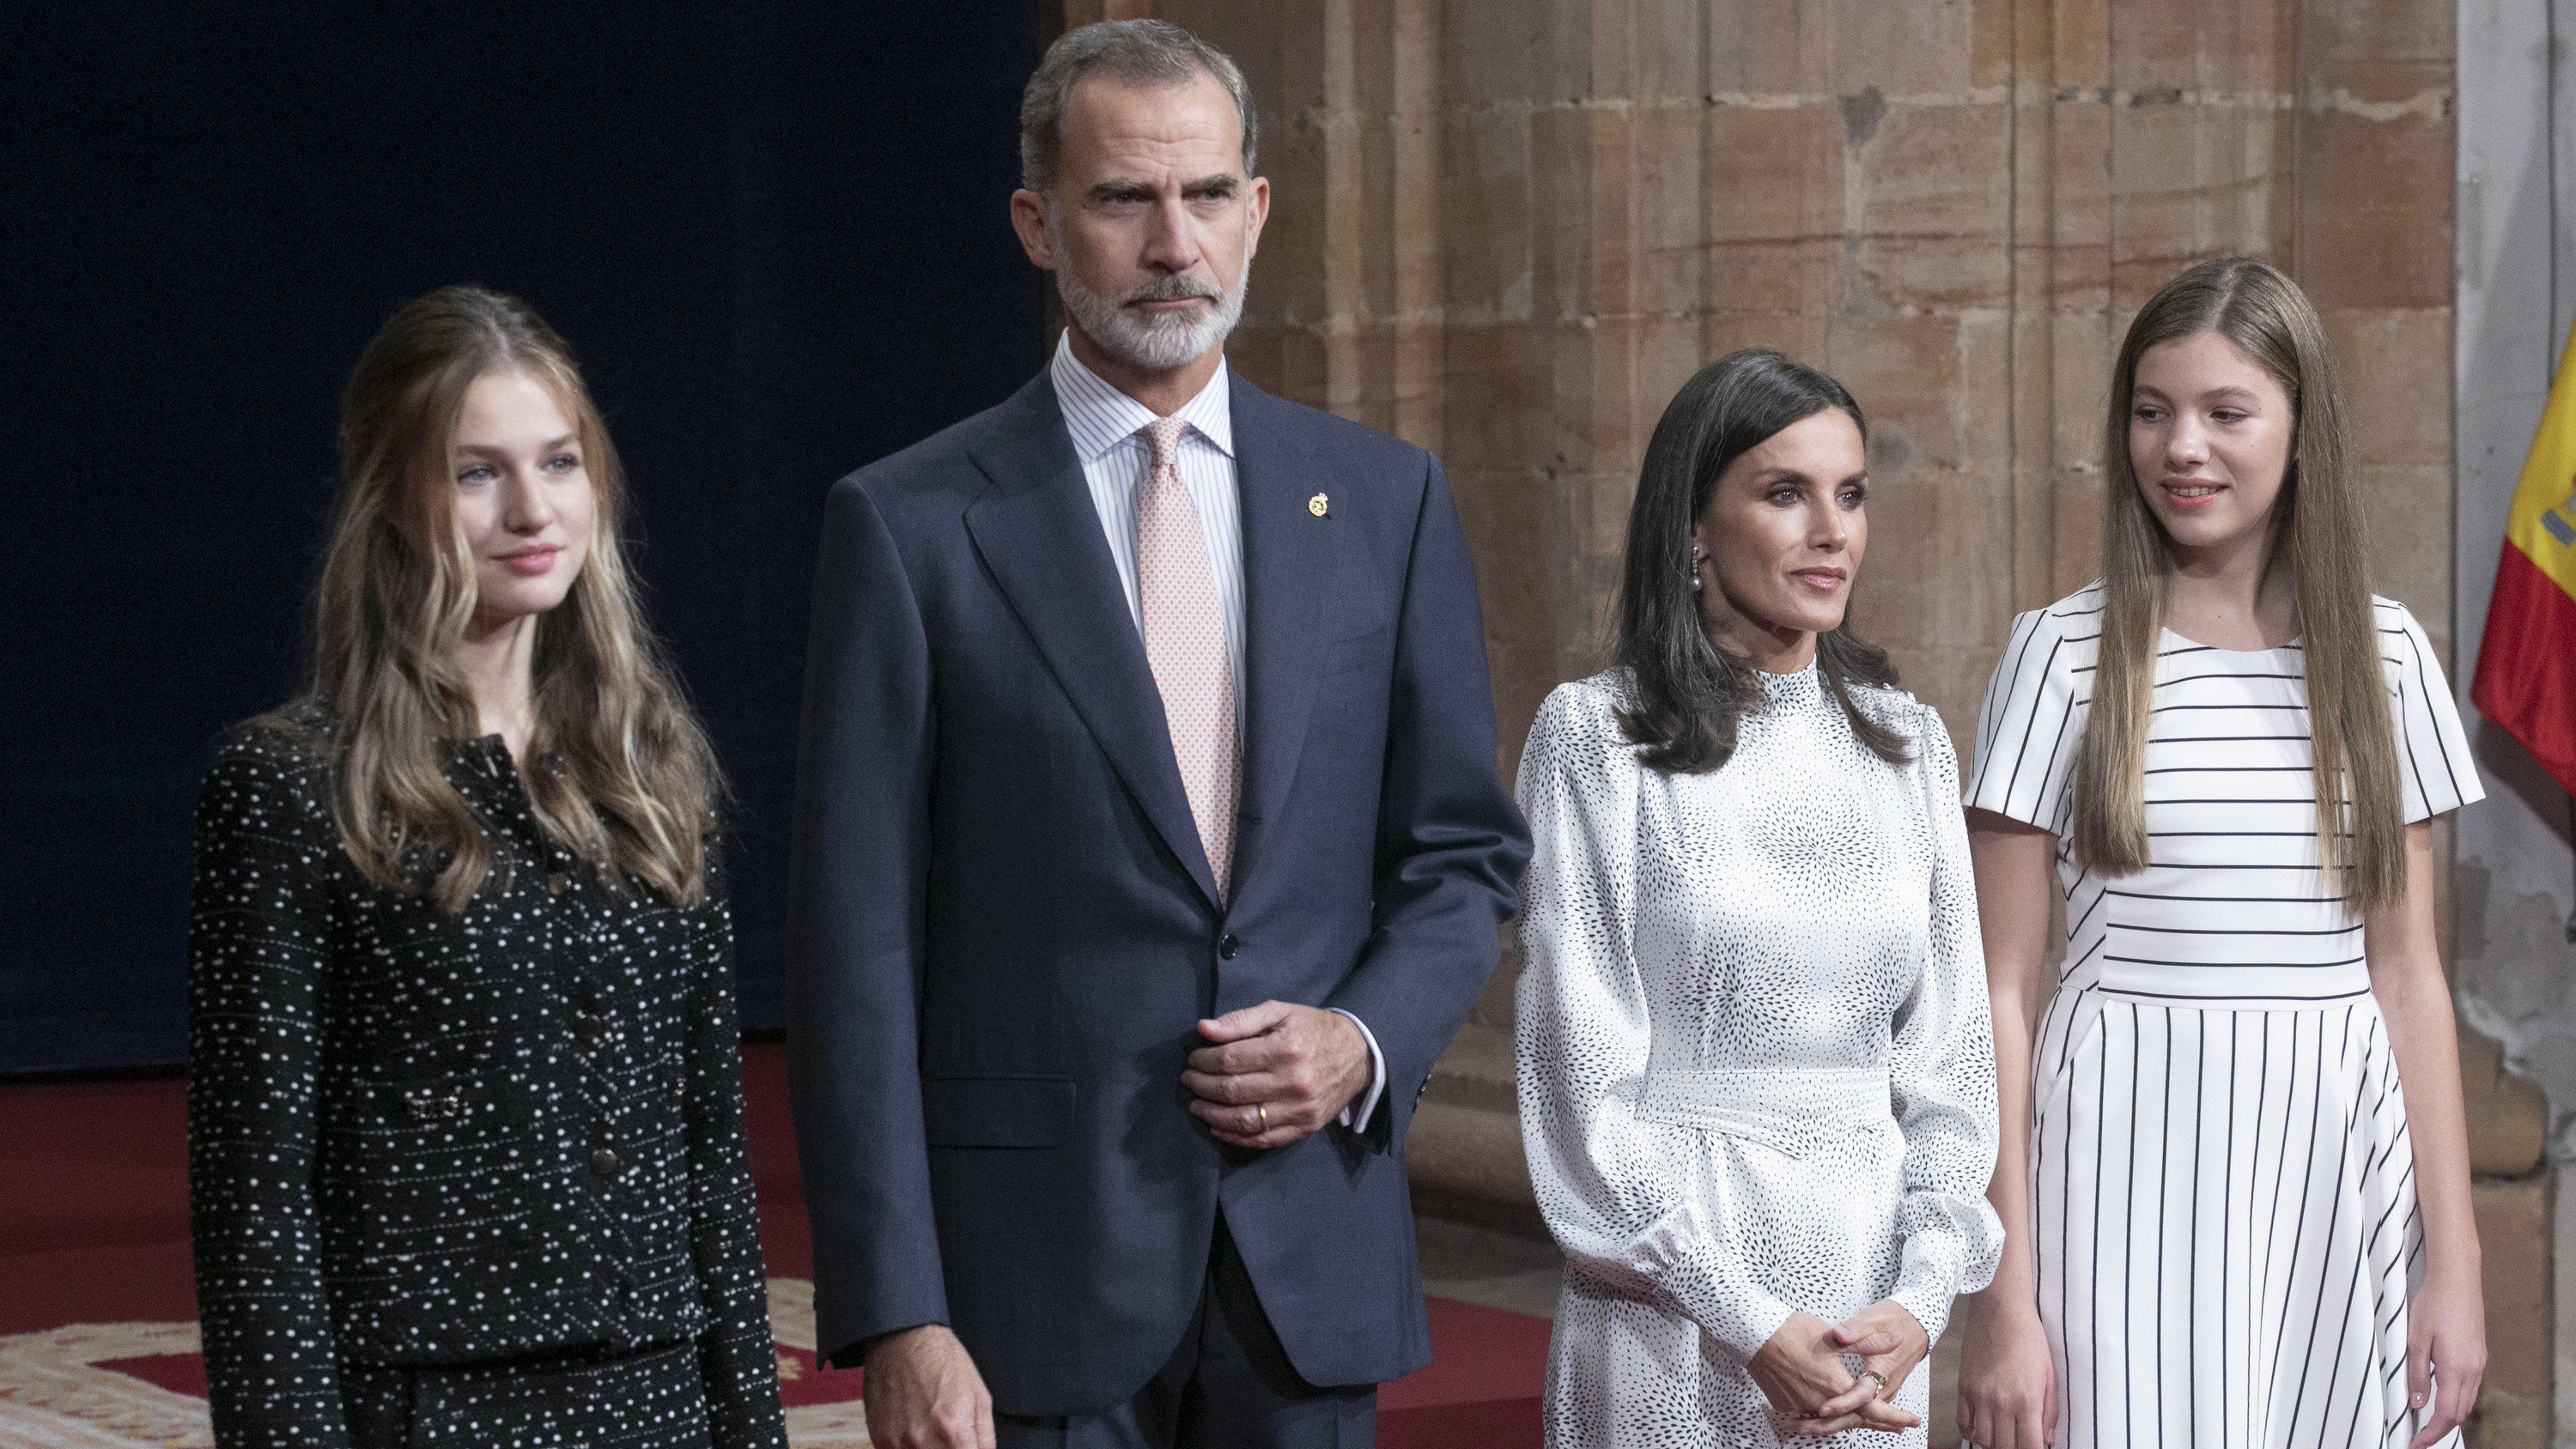 La famiglia reale spagnola dovrà probabilmente festeggiare il capodanno senza il re Felipe